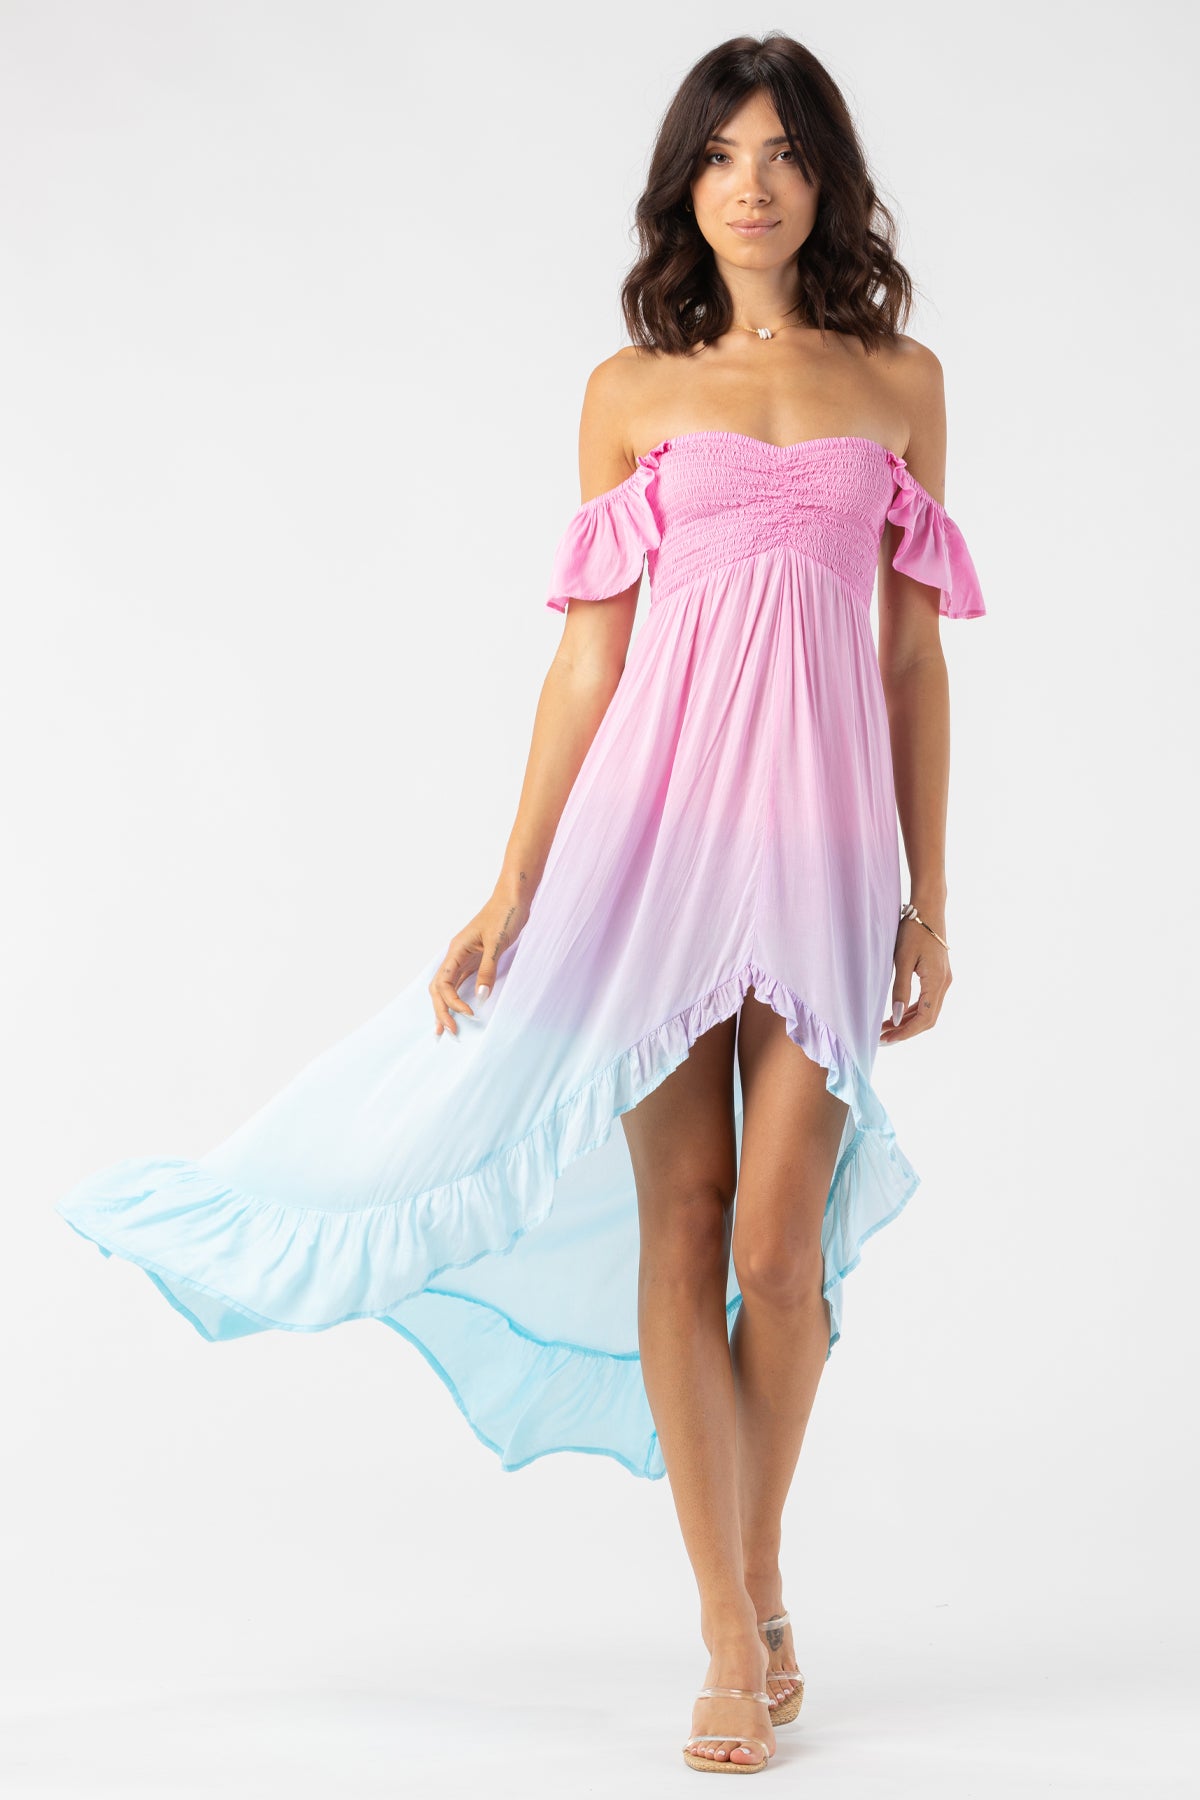 Tiare Hawaii Brooklyn Maxi Dress - Pink Violet Aqua Ombre